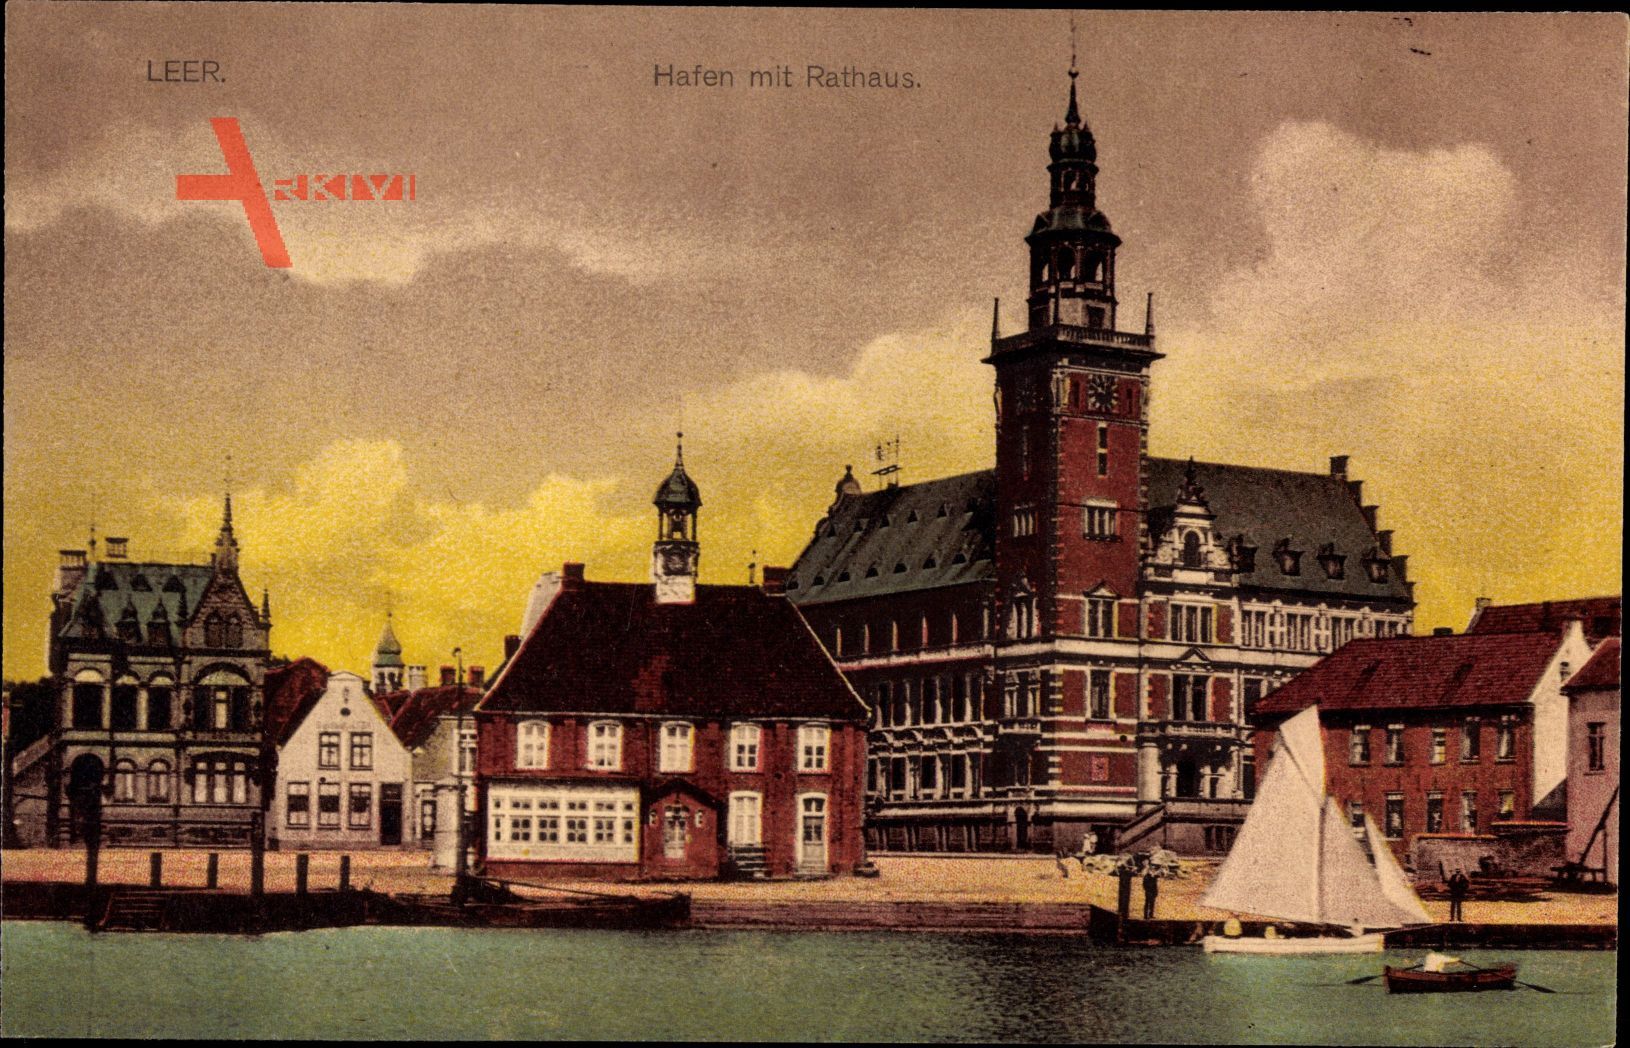 Leer in Niedersachsen, Blick auf den Hafen und das Rathaus, Segelboot